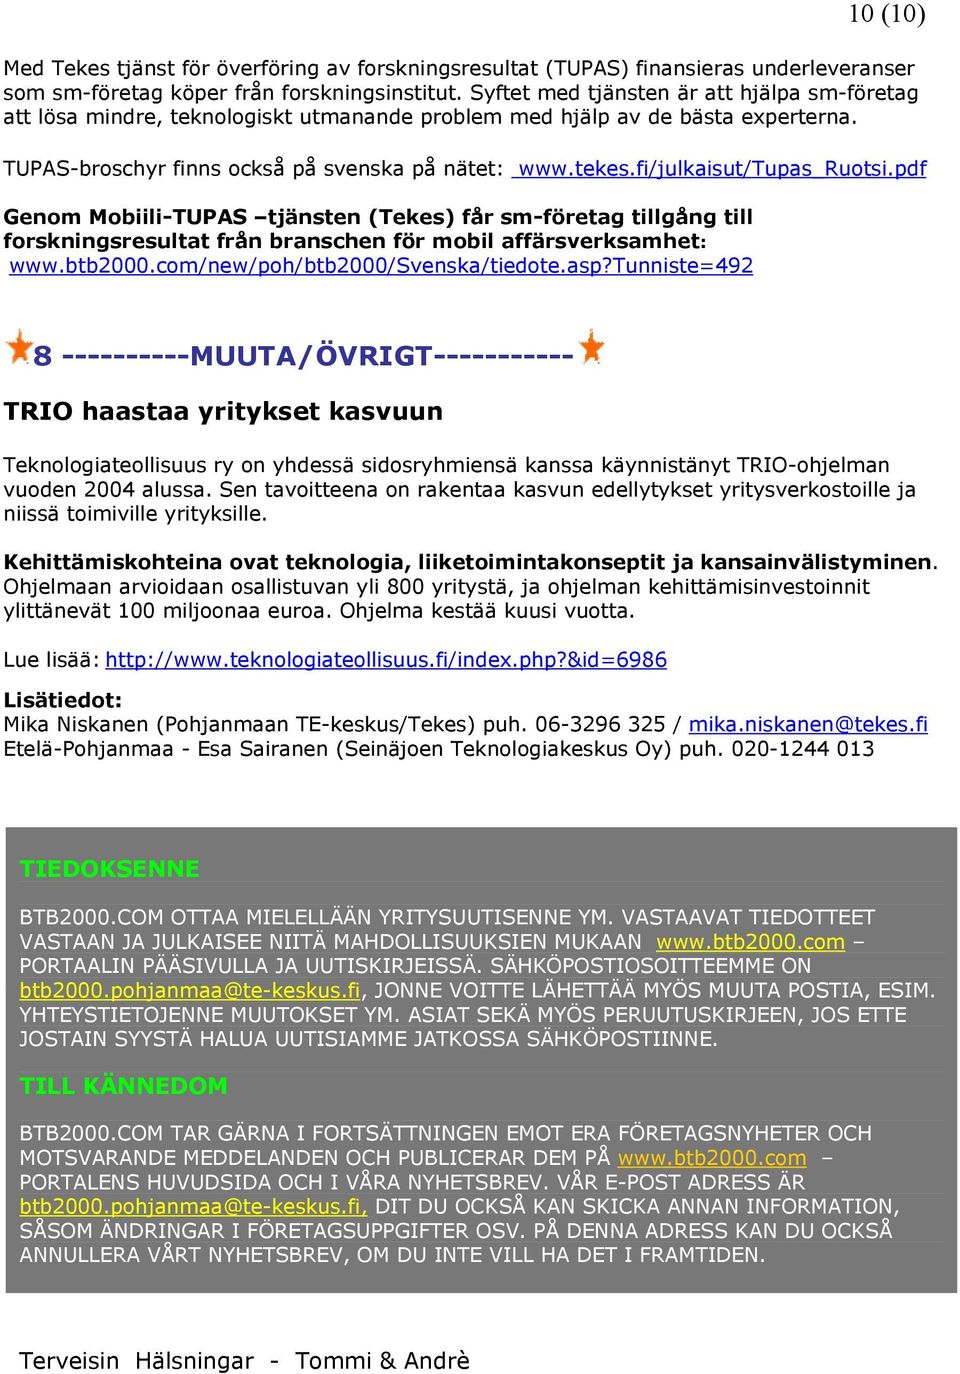 fi/julkaisut/tupas_rutsi.pdf Genm Mbiili-TUPAS tjänsten (Tekes) får sm-företag tillgång till frskningsresultat från branschen för mbil affärsverksamhet: www.btb2000.cm/new/ph/btb2000/svenska/tiedte.